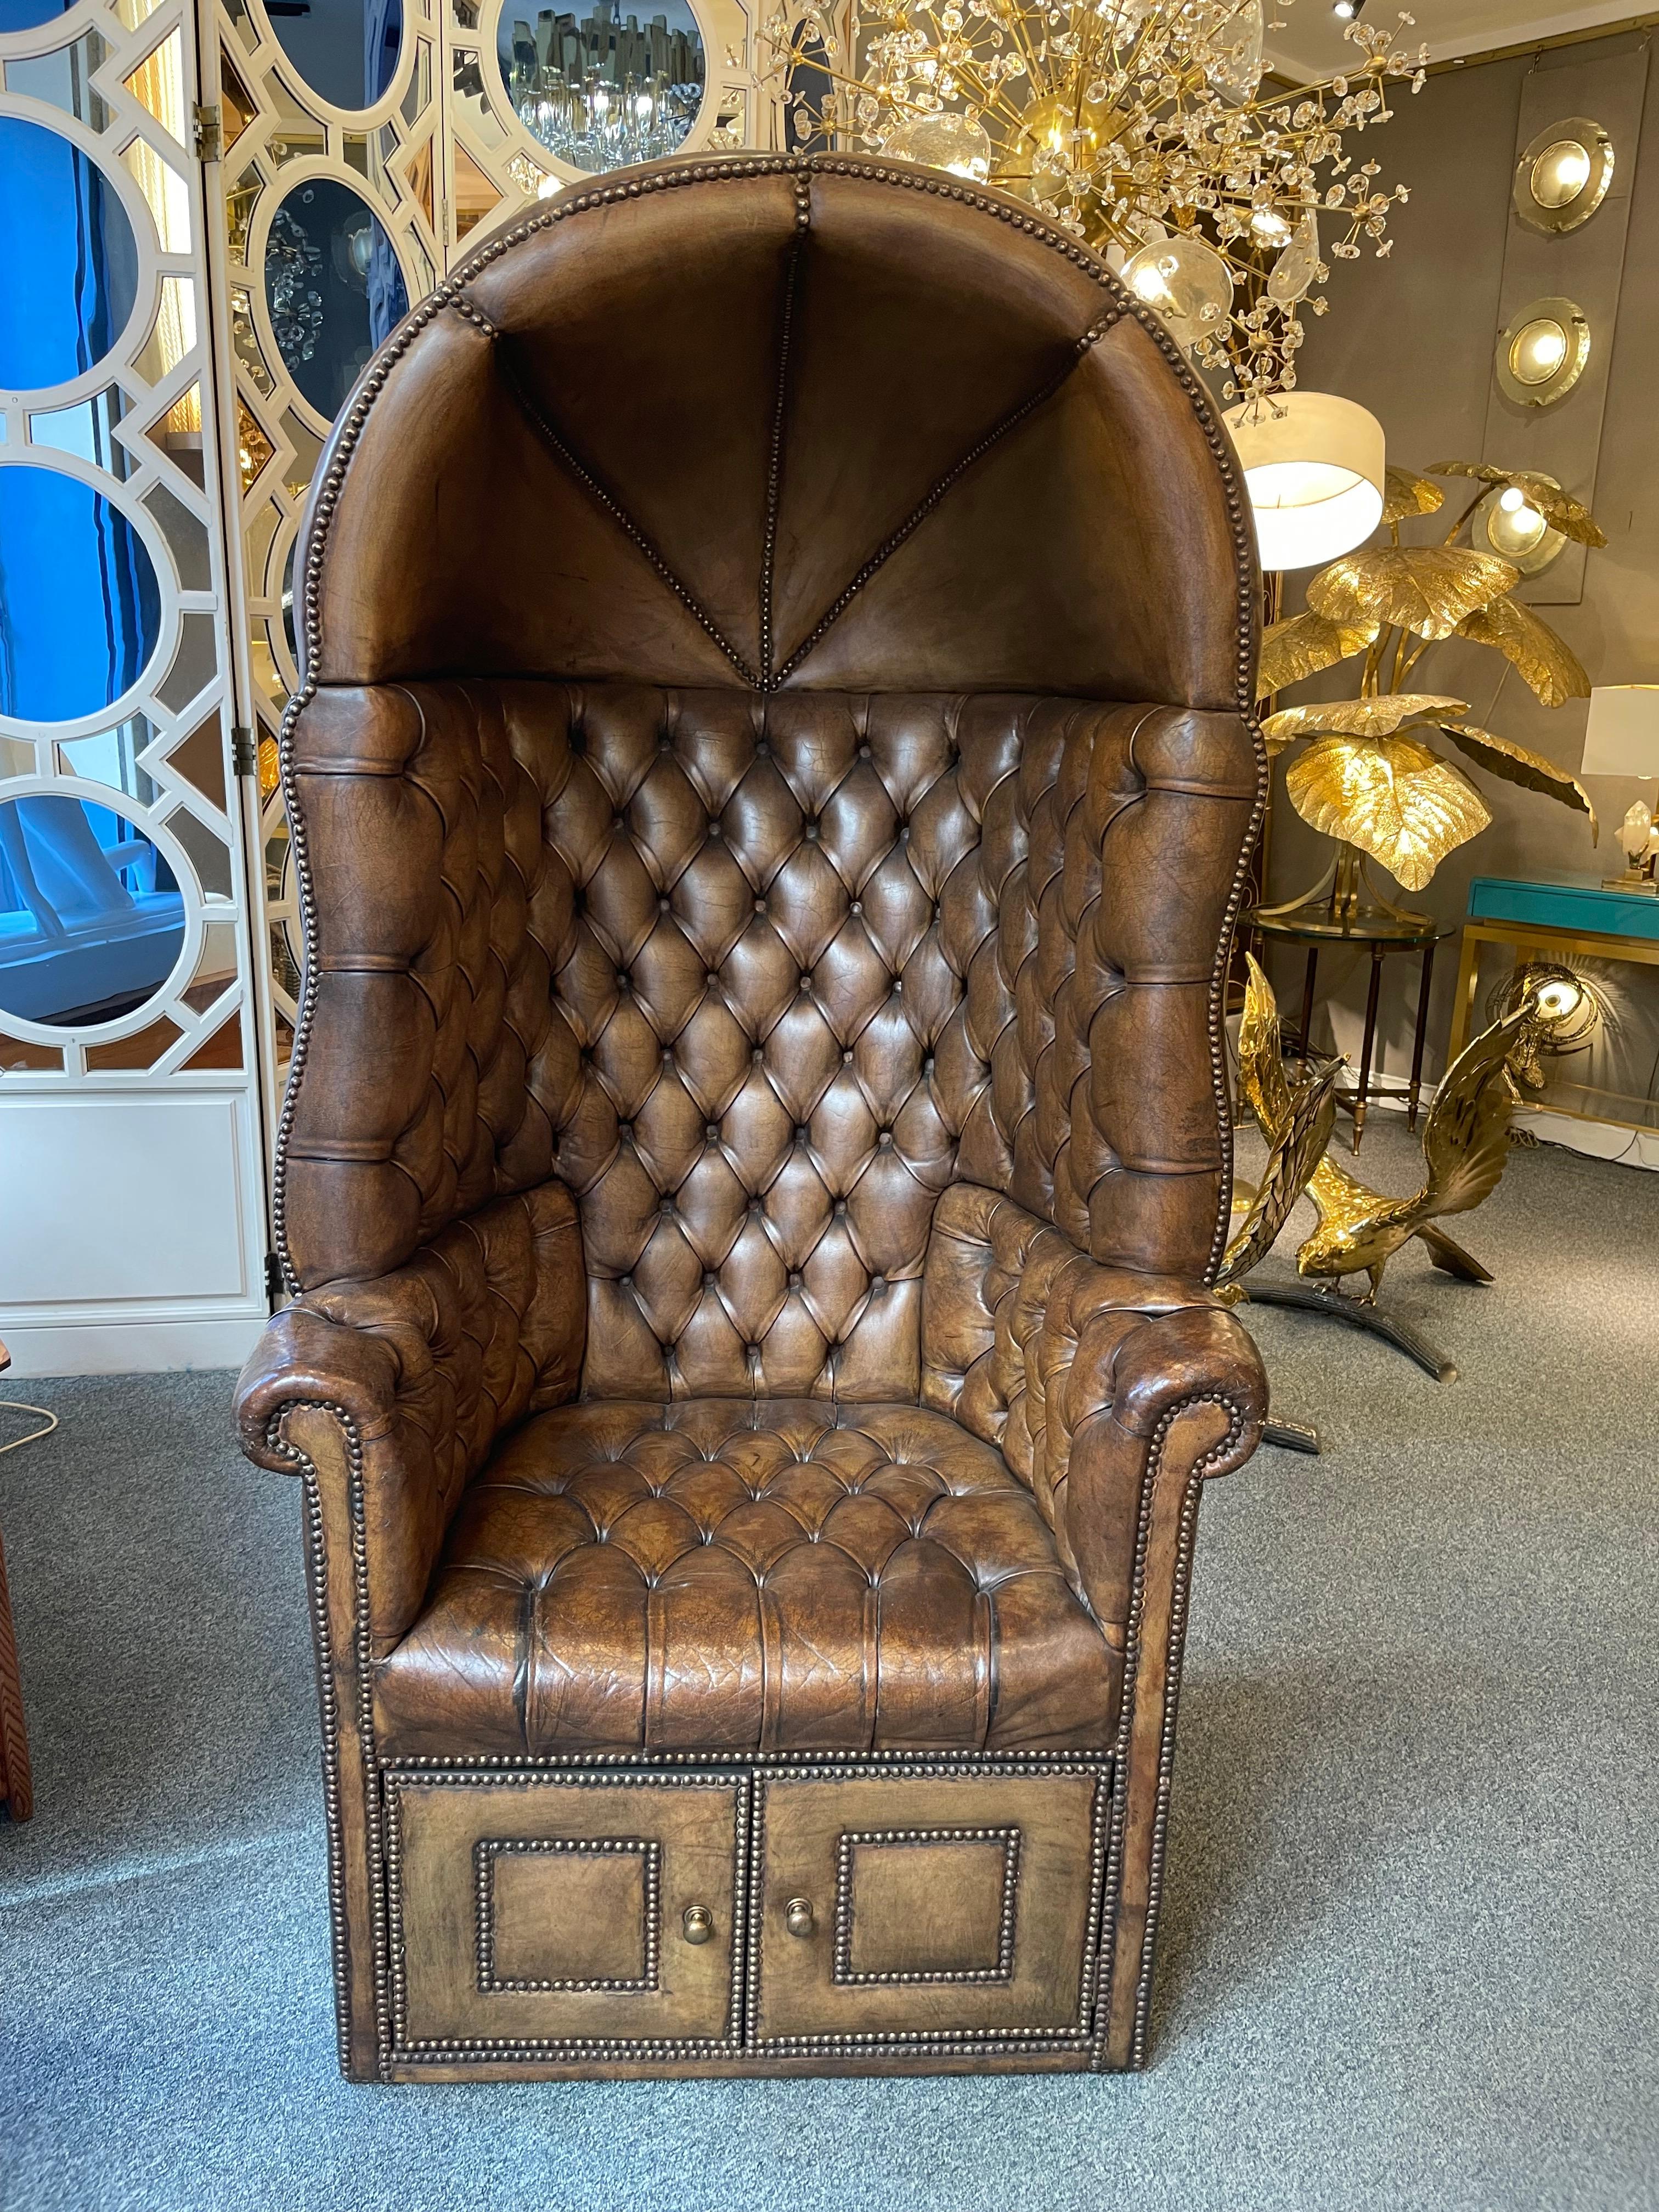 Seltener Sessel im Chesterfield-Stil, gepolstertes Leder.
Der untere Teil lässt sich mit zwei Türen öffnen. England um 1950.